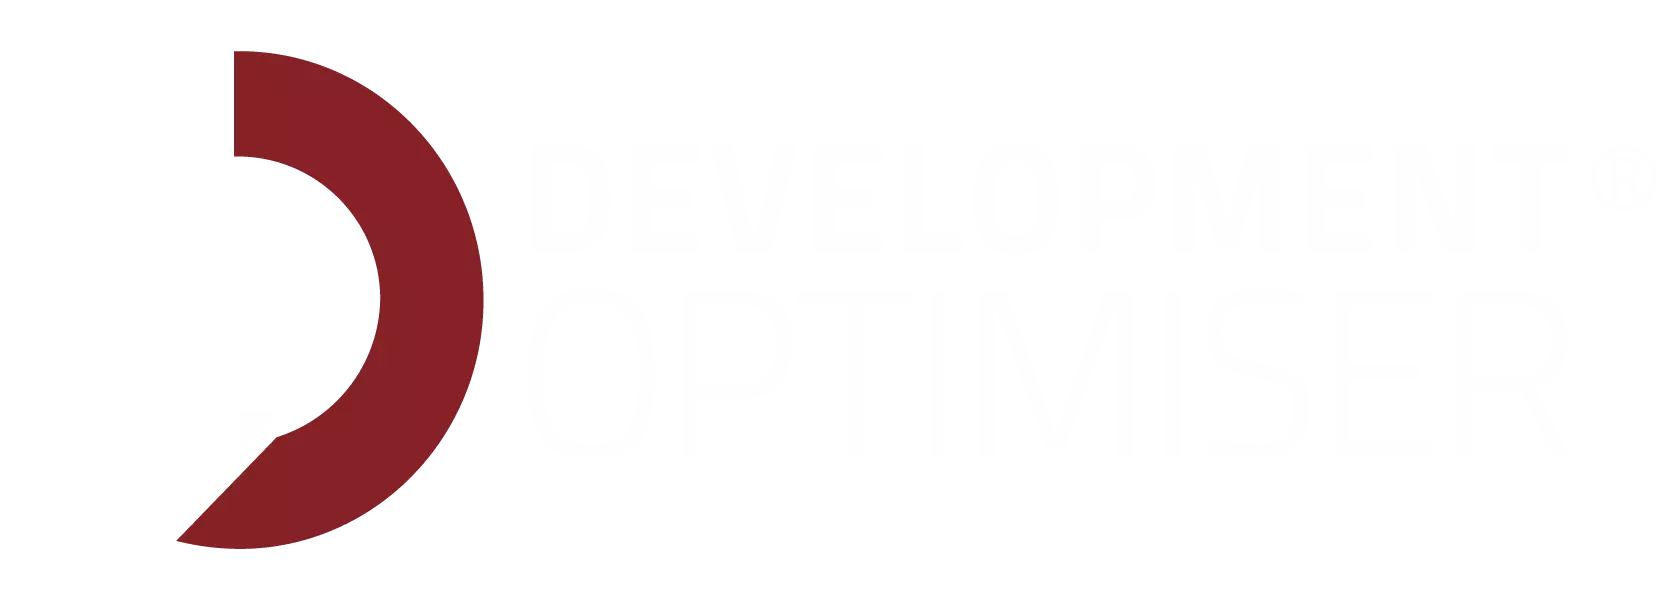 The Development Optimiser™